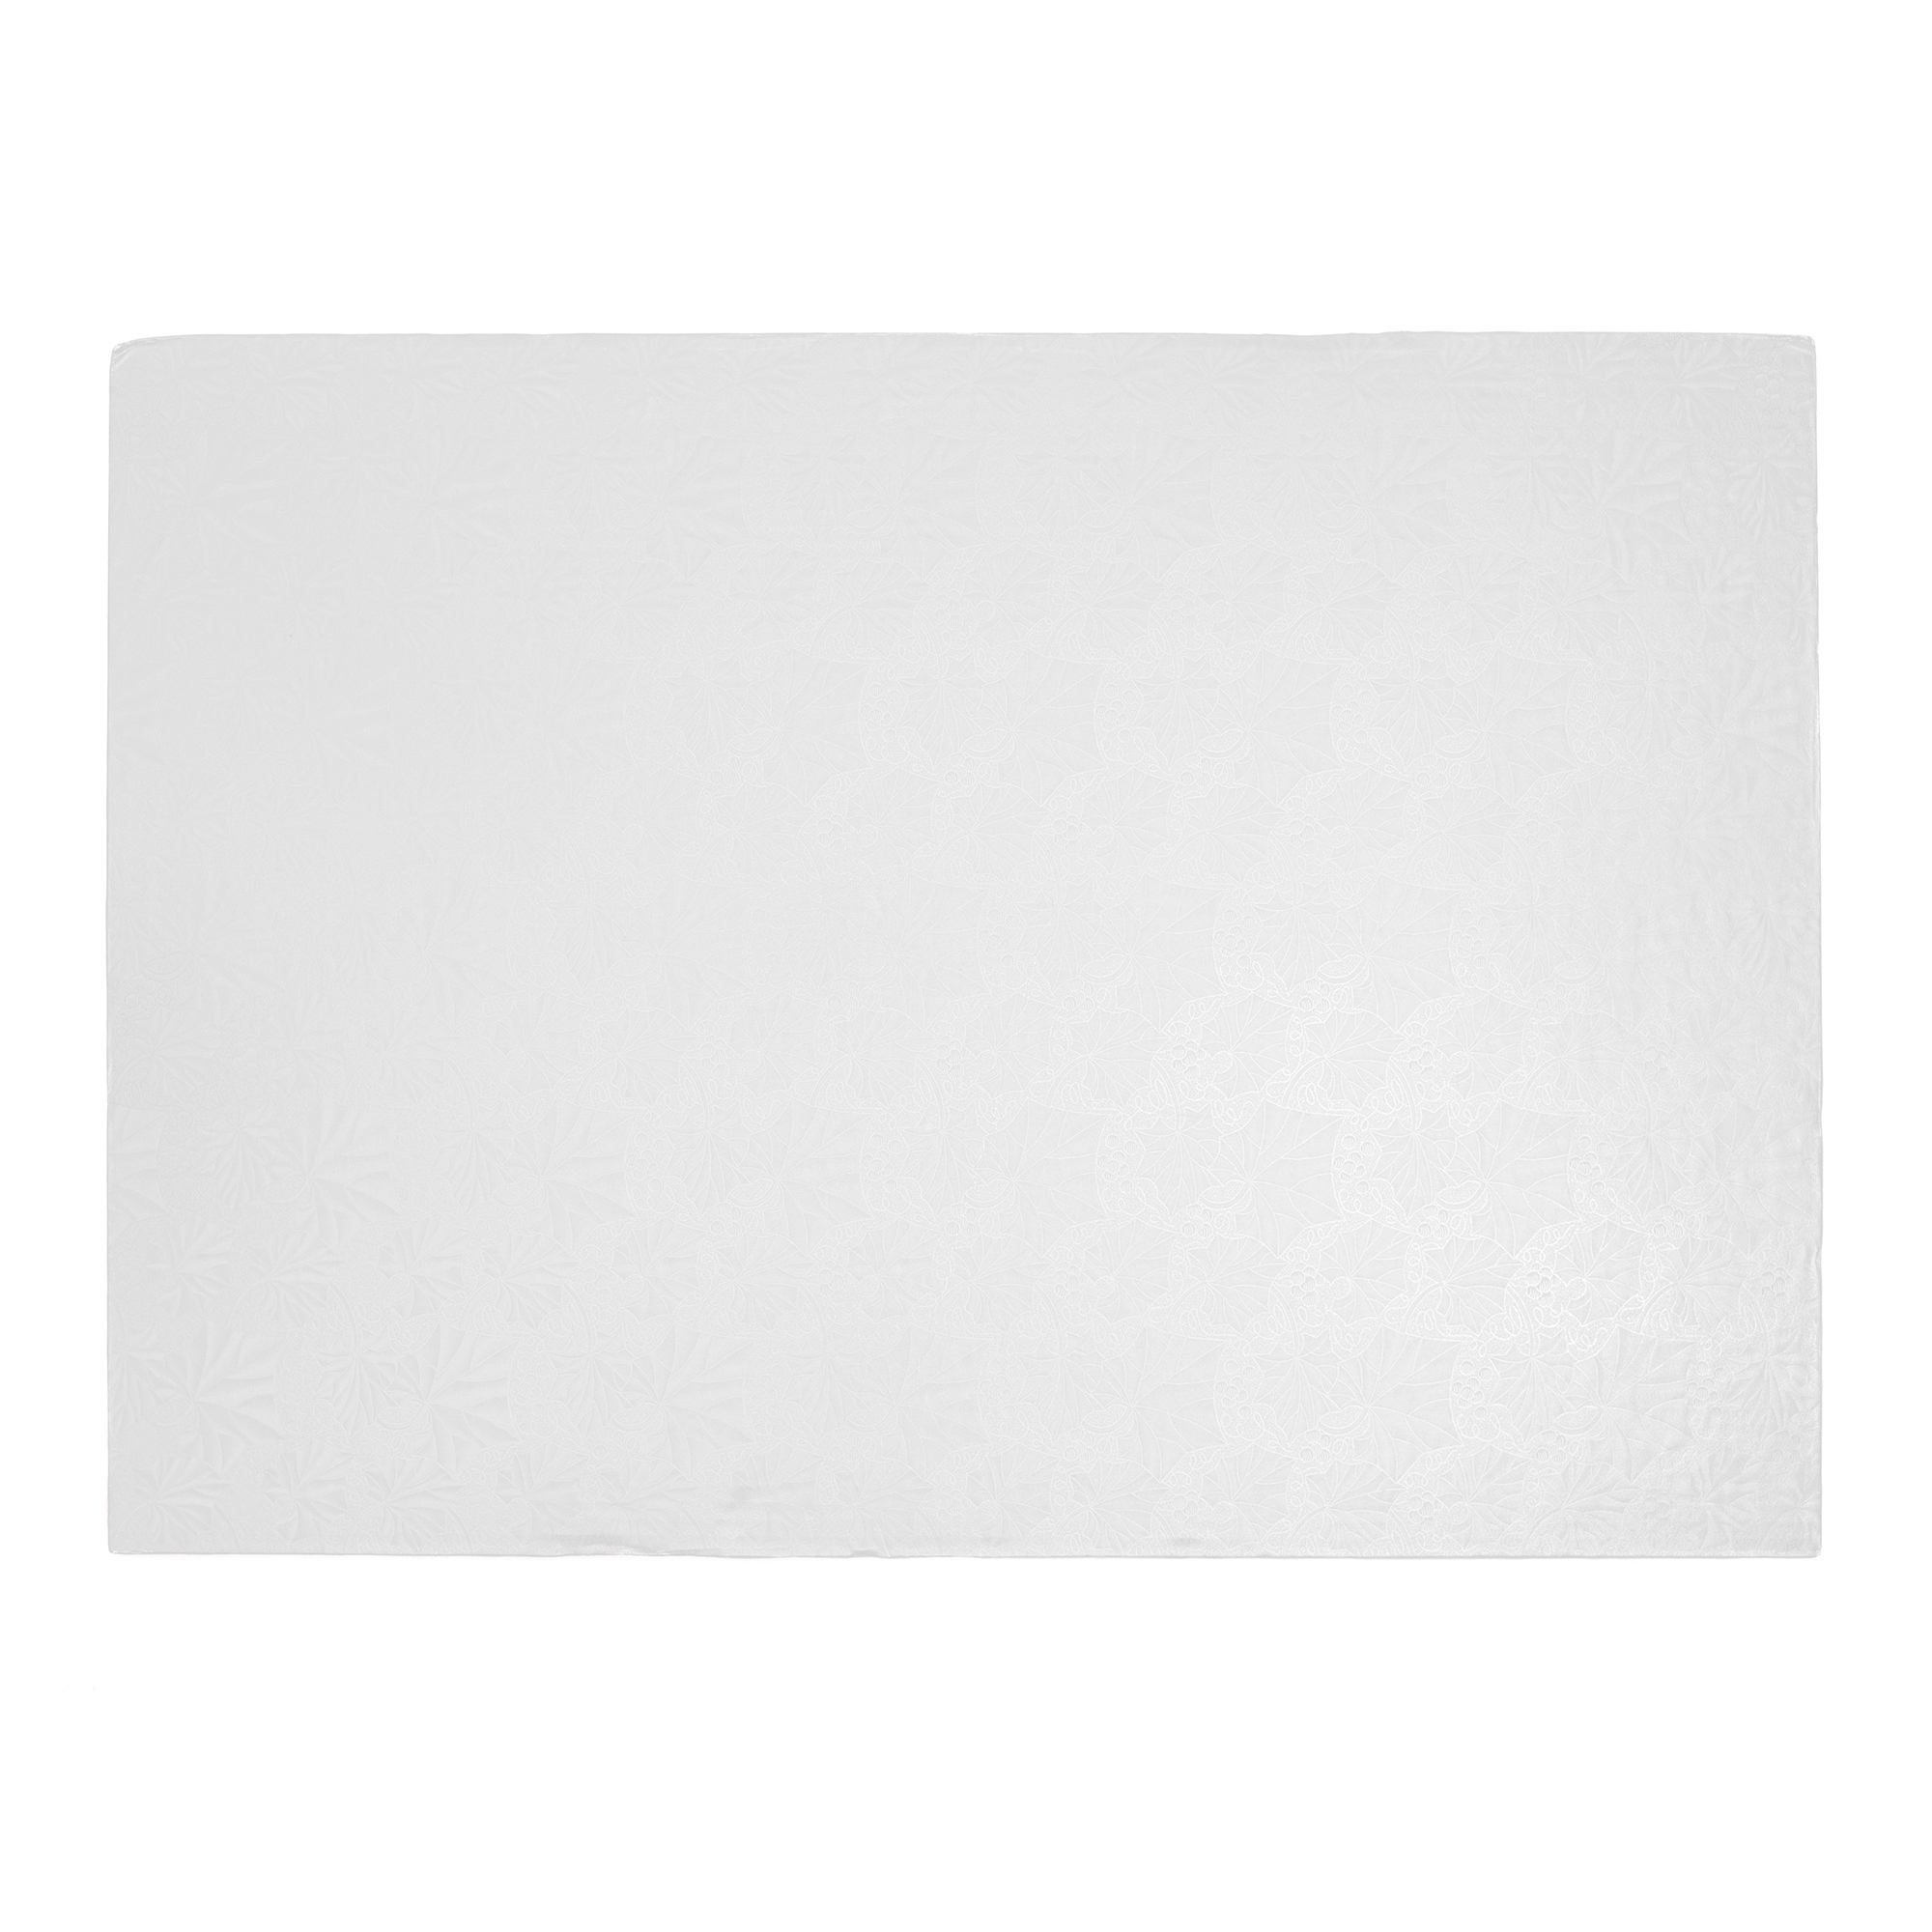 Foil Covered Cake Board Fullsheet 3pc/pack - White